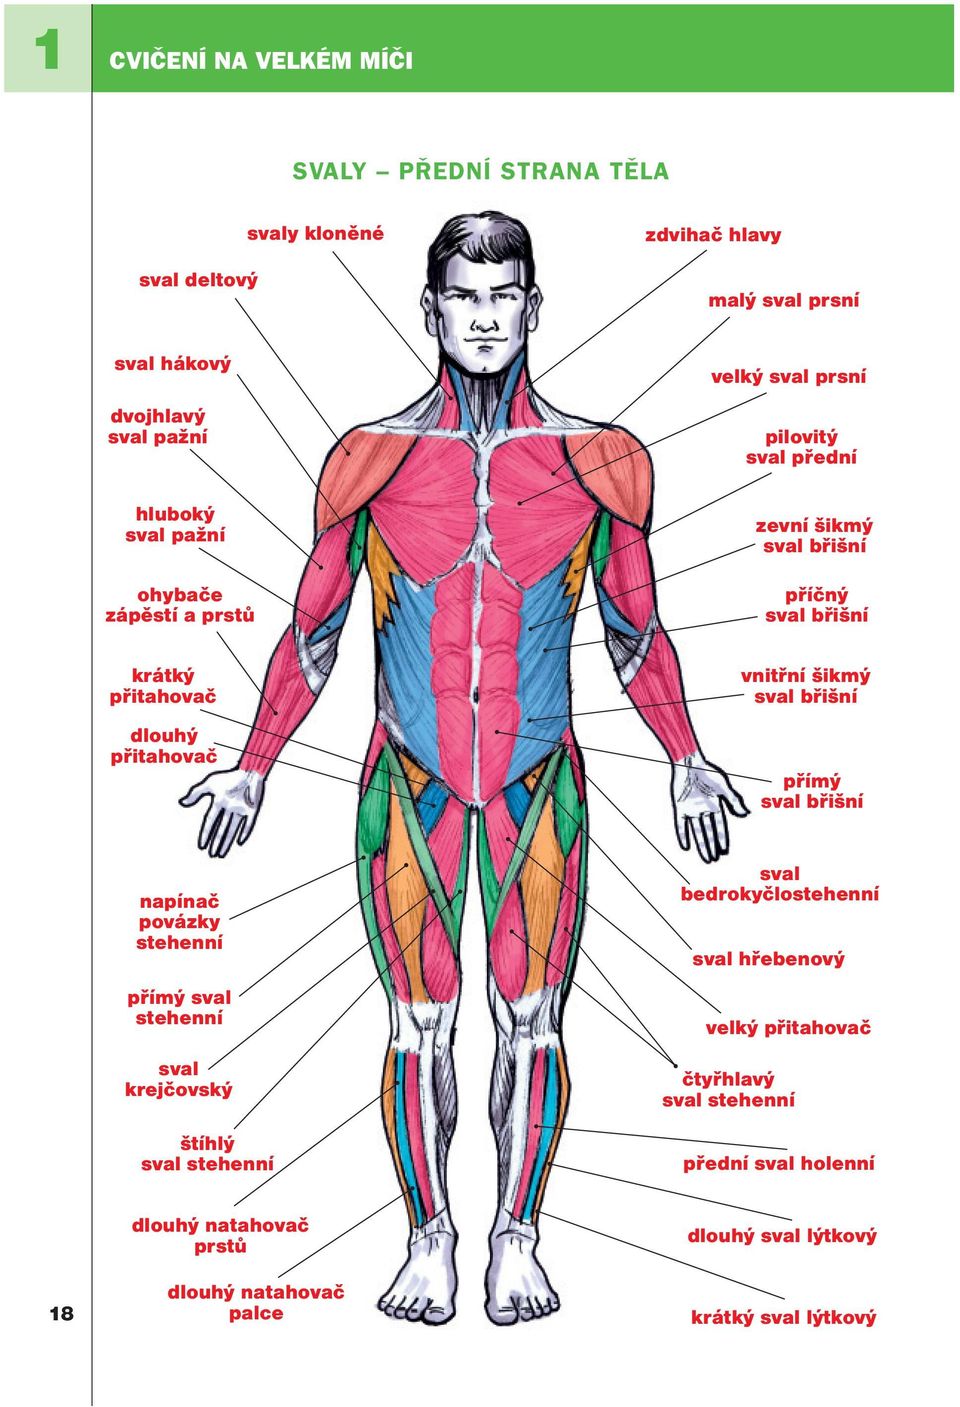 vnitřní šikmý sval břišní přímý sval břišní napínač povázky stehenní přímý sval stehenní sval krejčovský štíhlý sval stehenní sval bedrokyčlostehenní